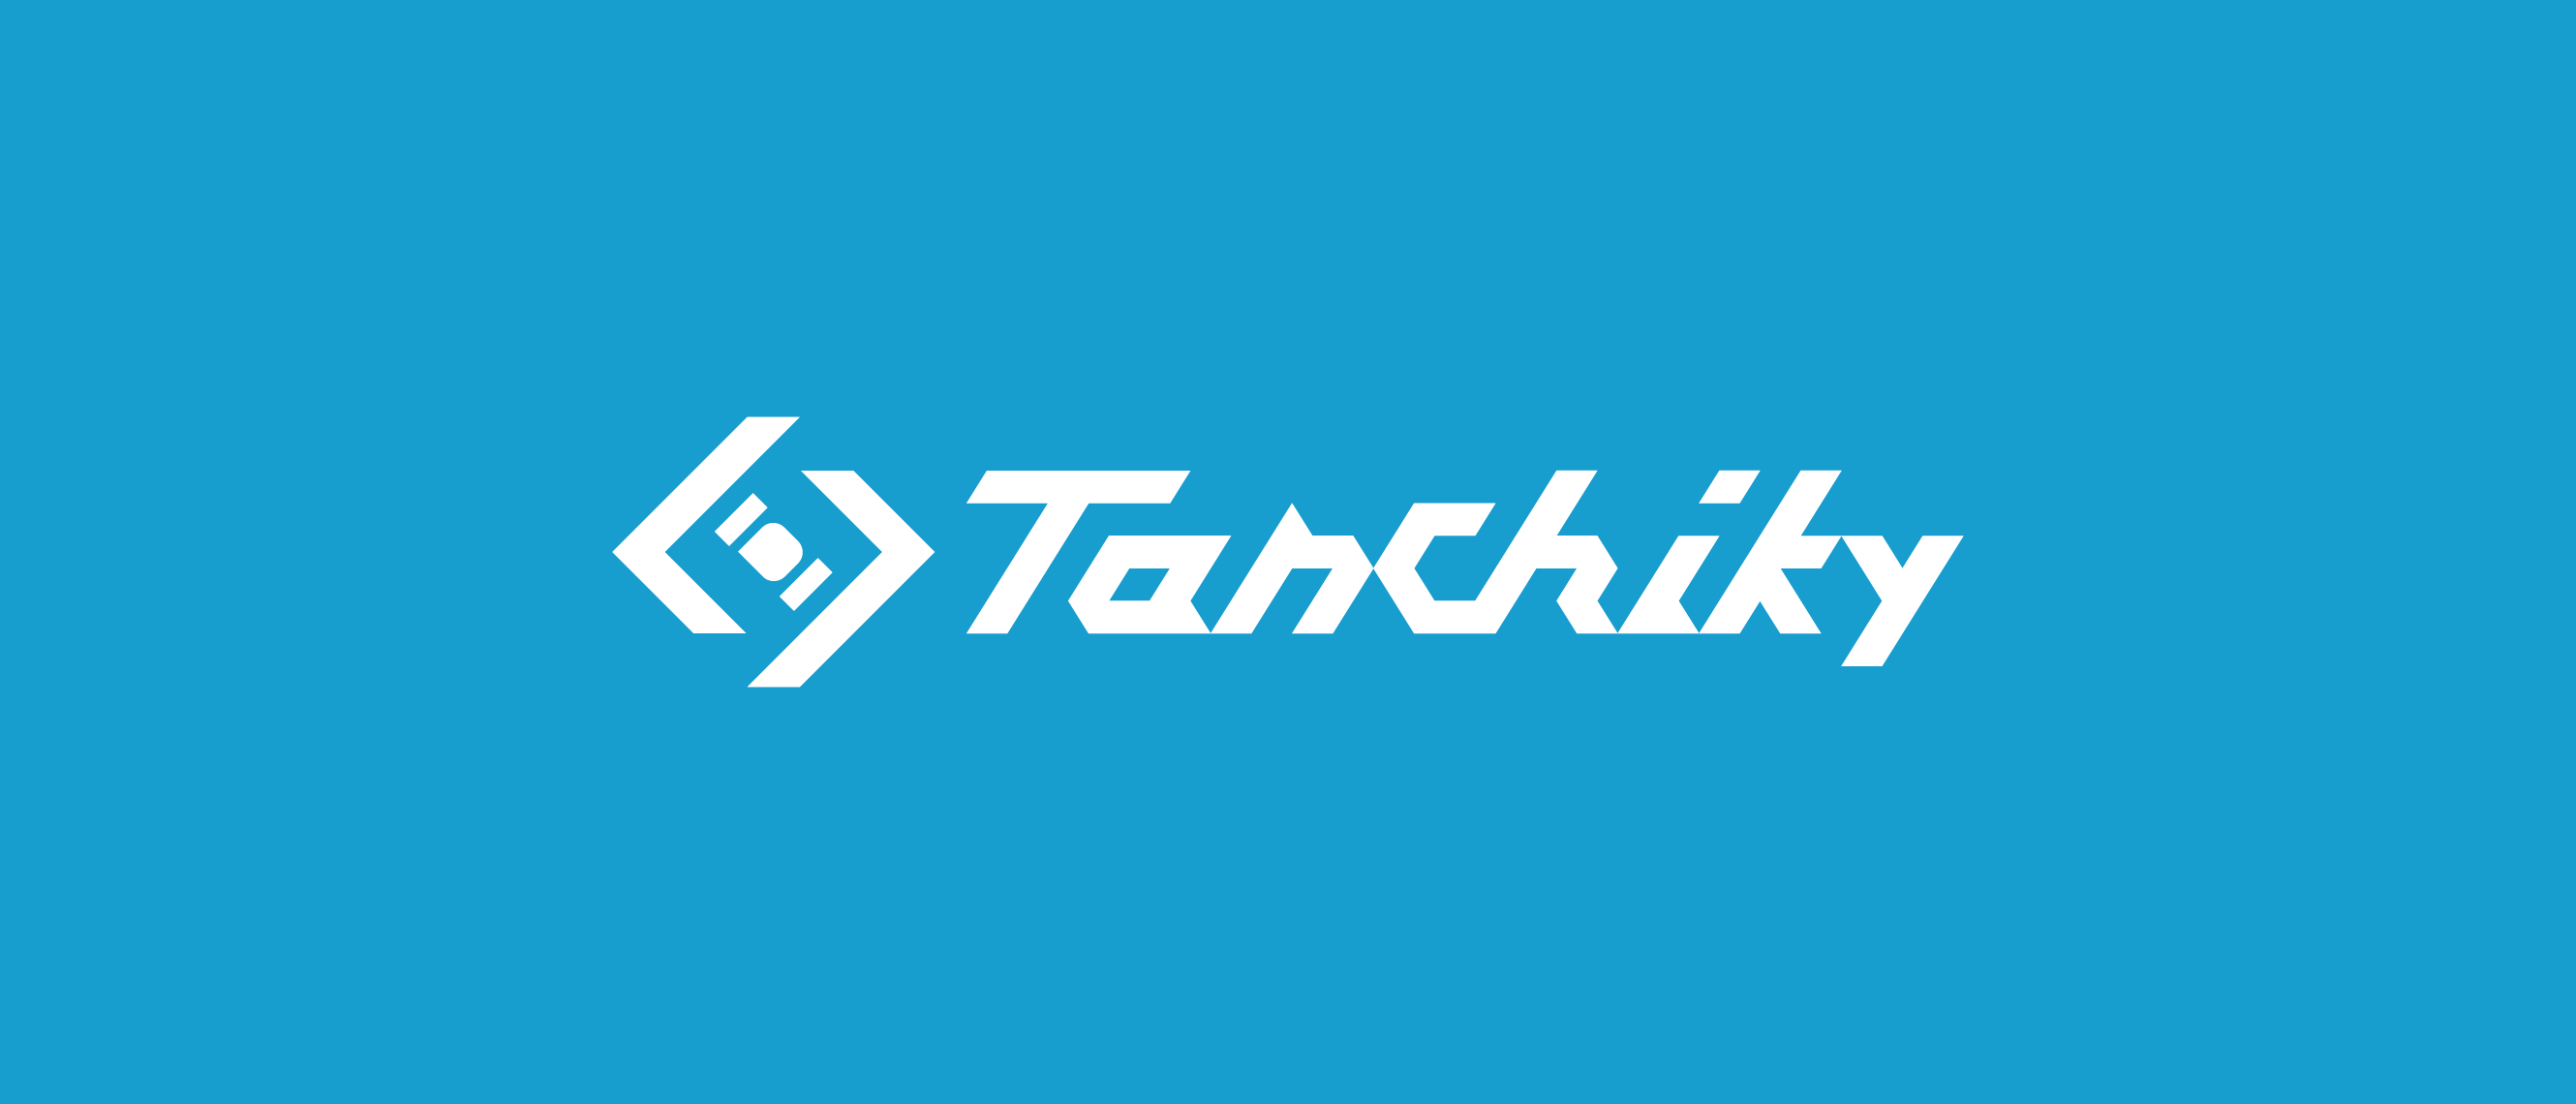 Tanchiky